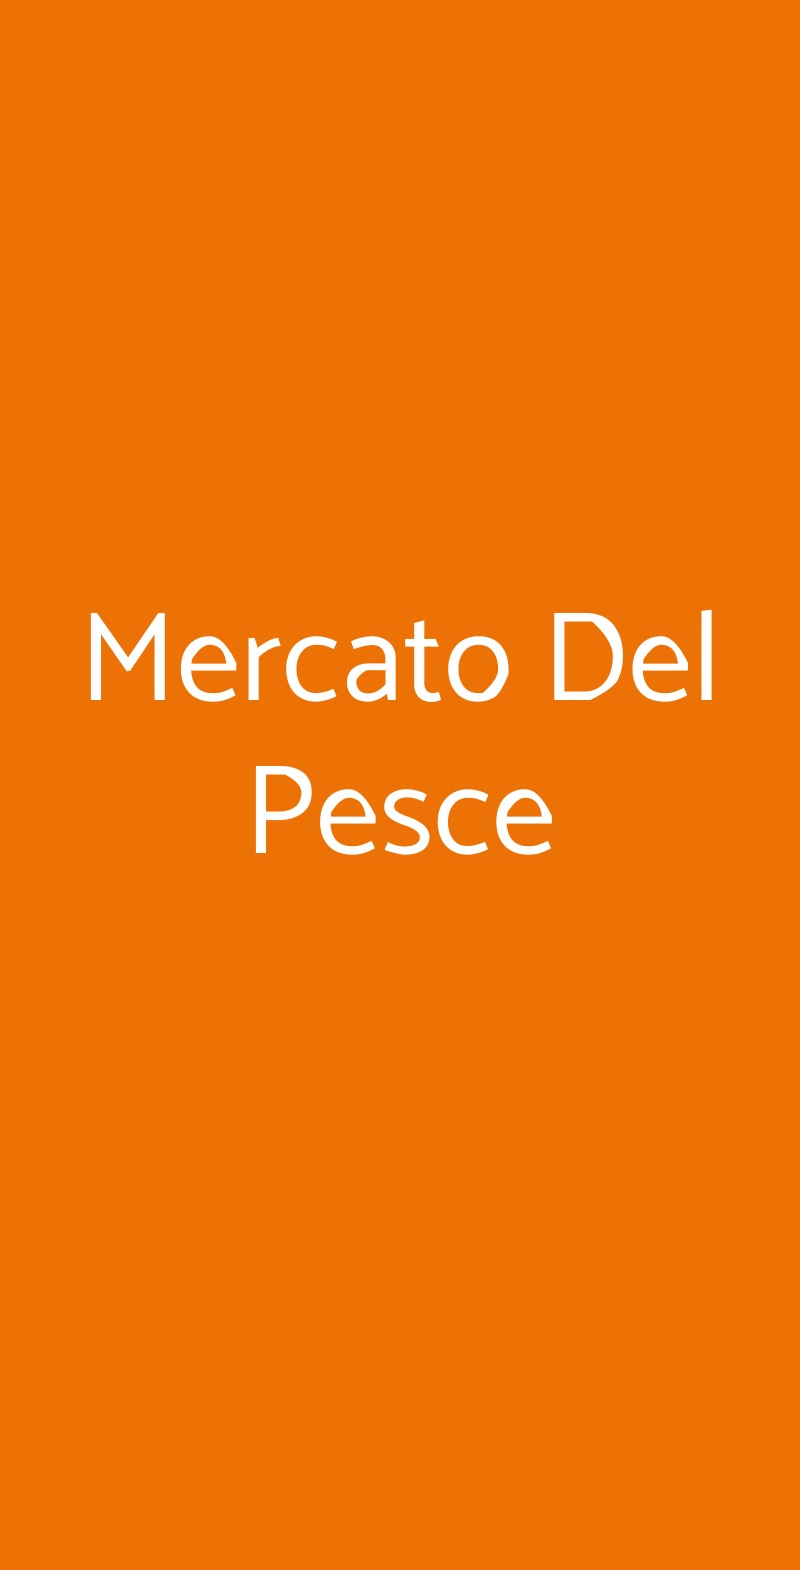 Mercato Del Pesce Milano menù 1 pagina